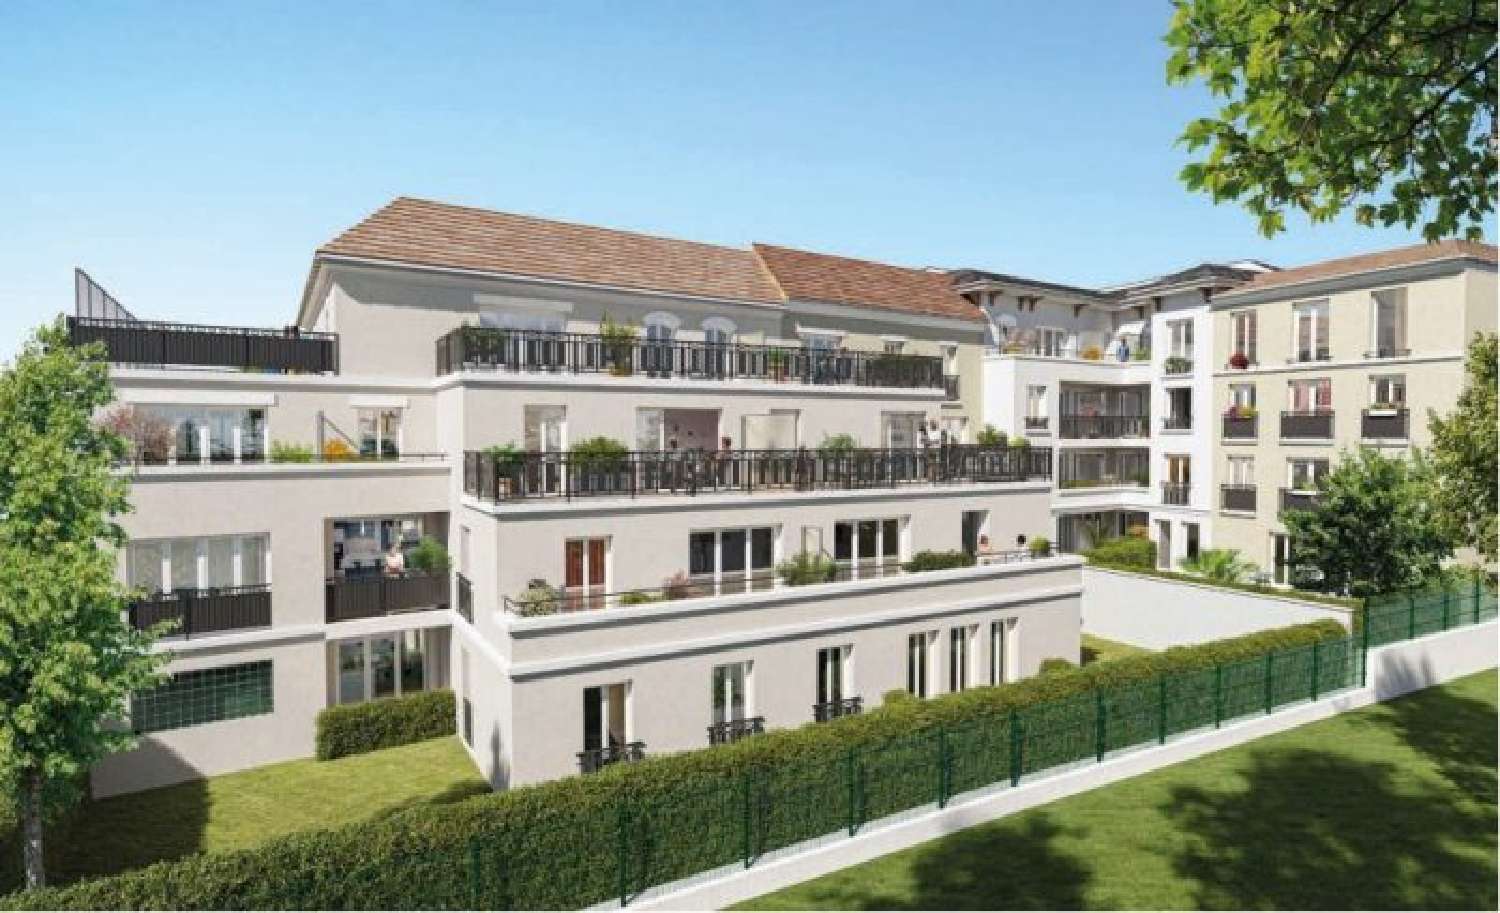  à vendre appartement Les Bruyères Val-de-Marne 2